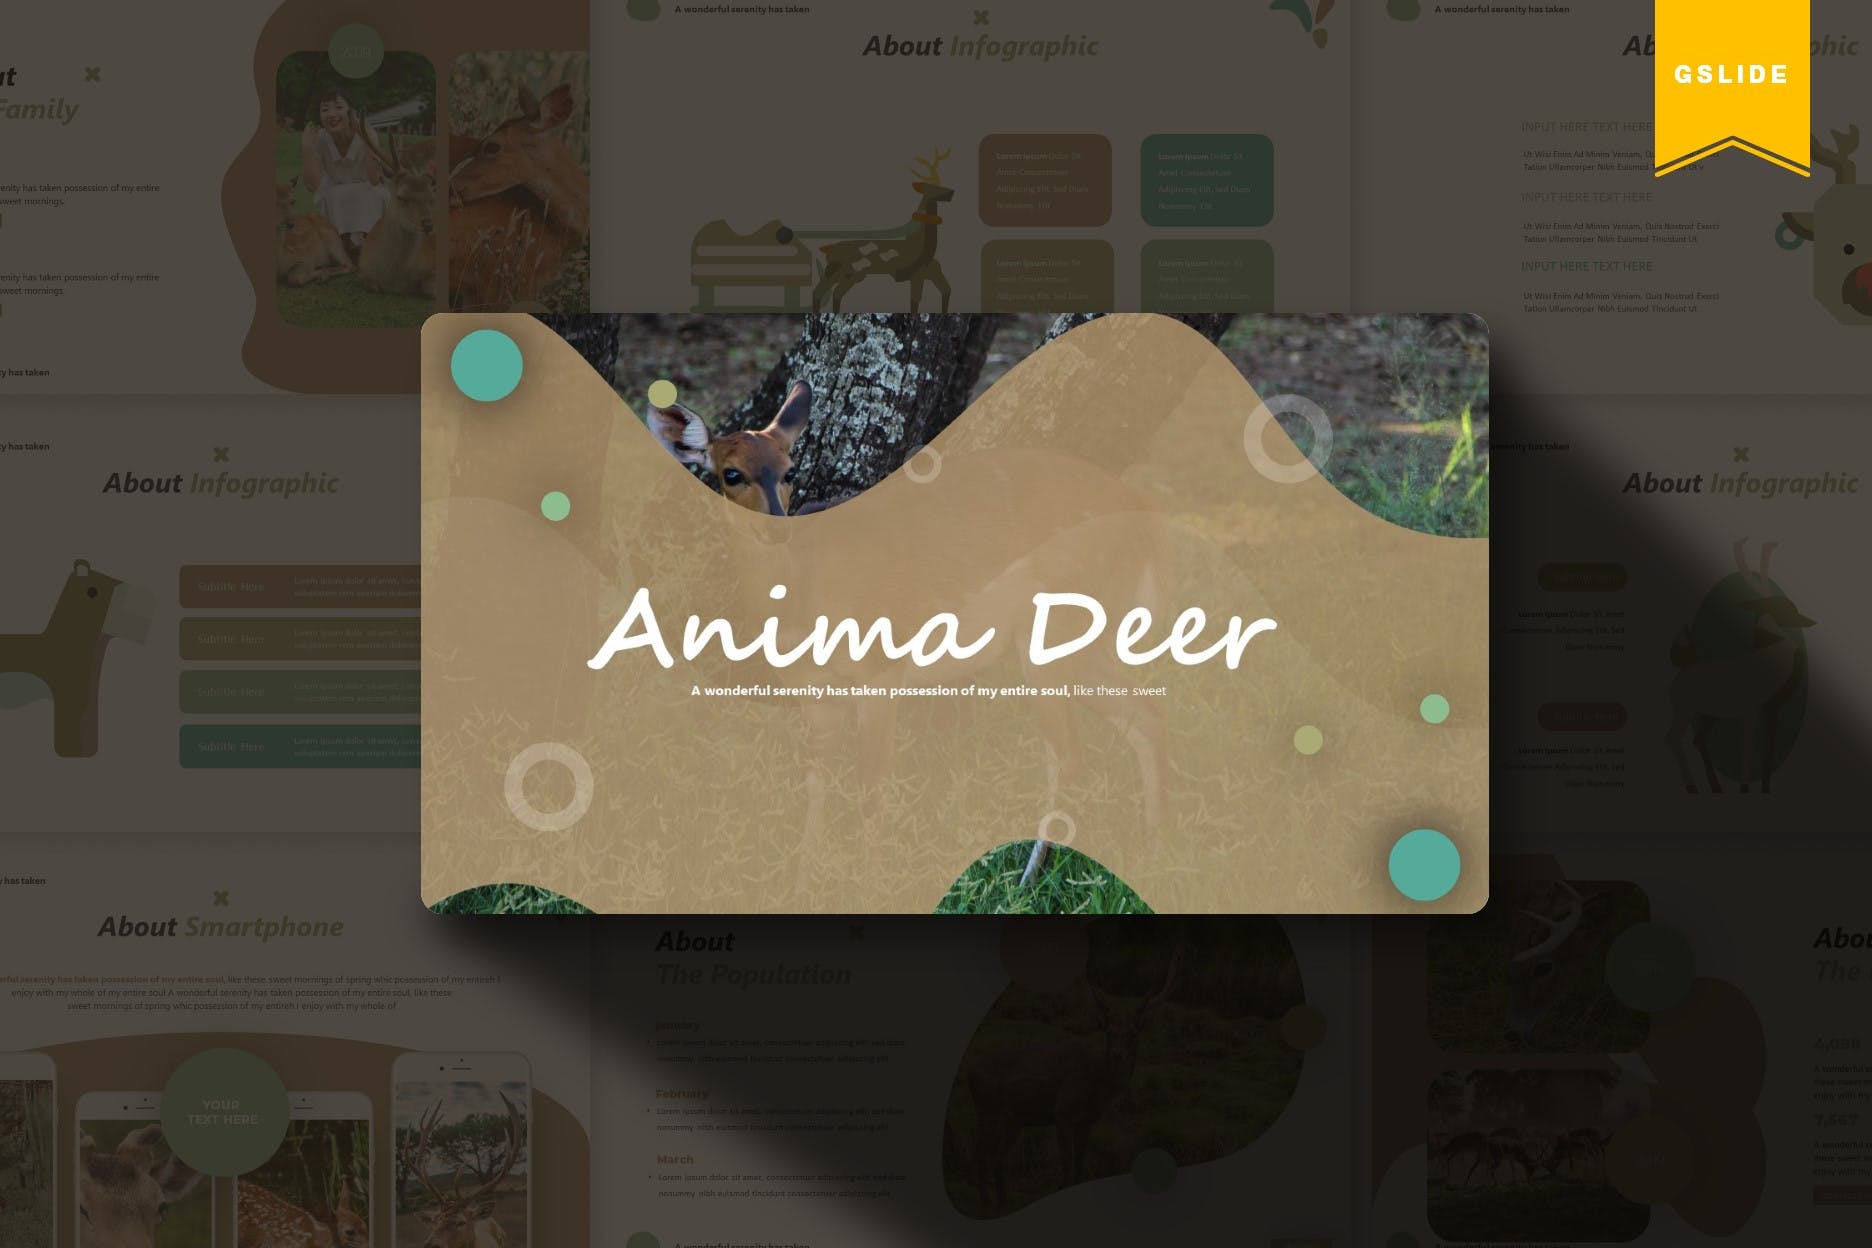 卡通小鹿儿童主题16图库精选谷歌演示模板 Anima Deer | Google Slides Template插图